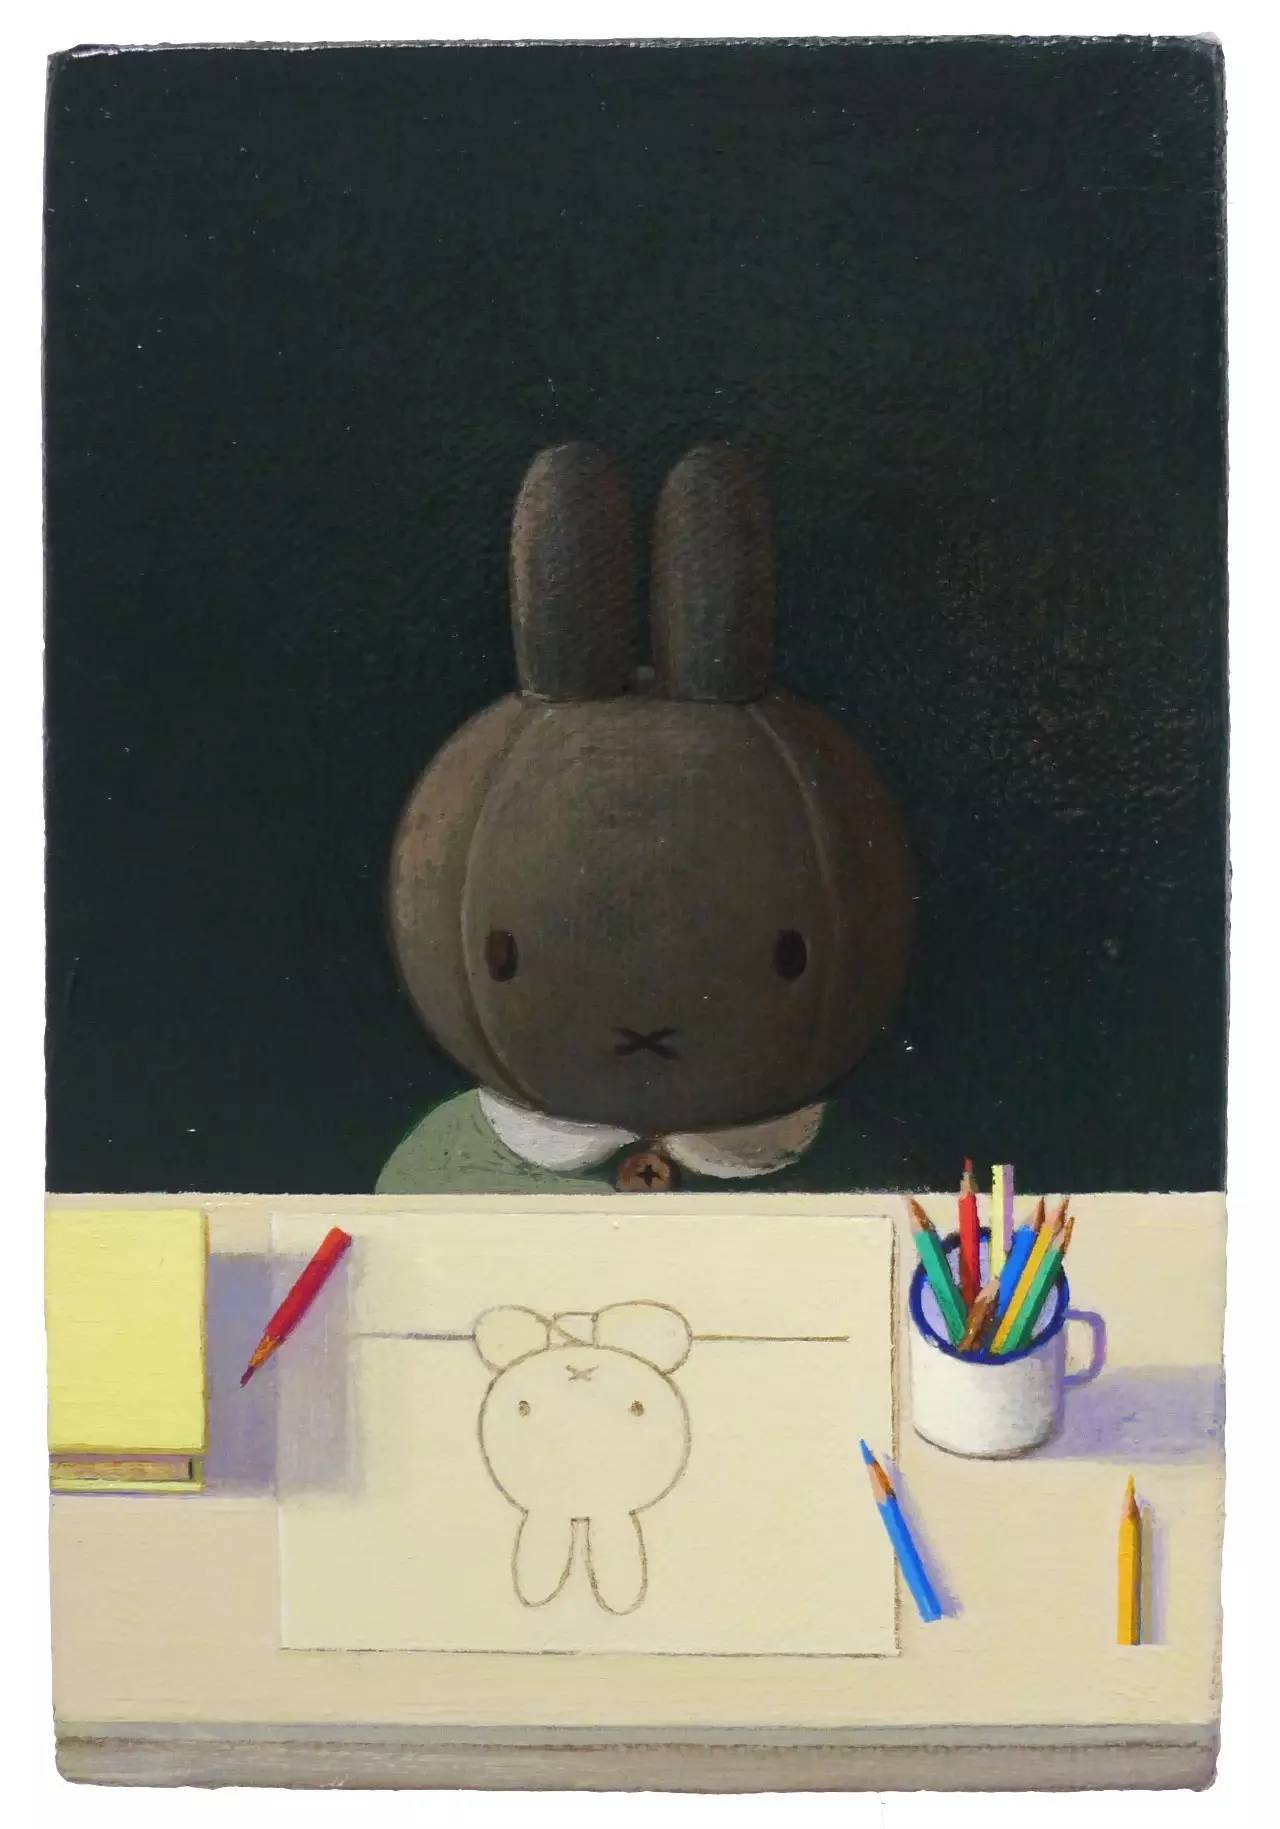 《米菲想成为艺术家》刘野说:我画过米菲兔的形象,但并不是代表我